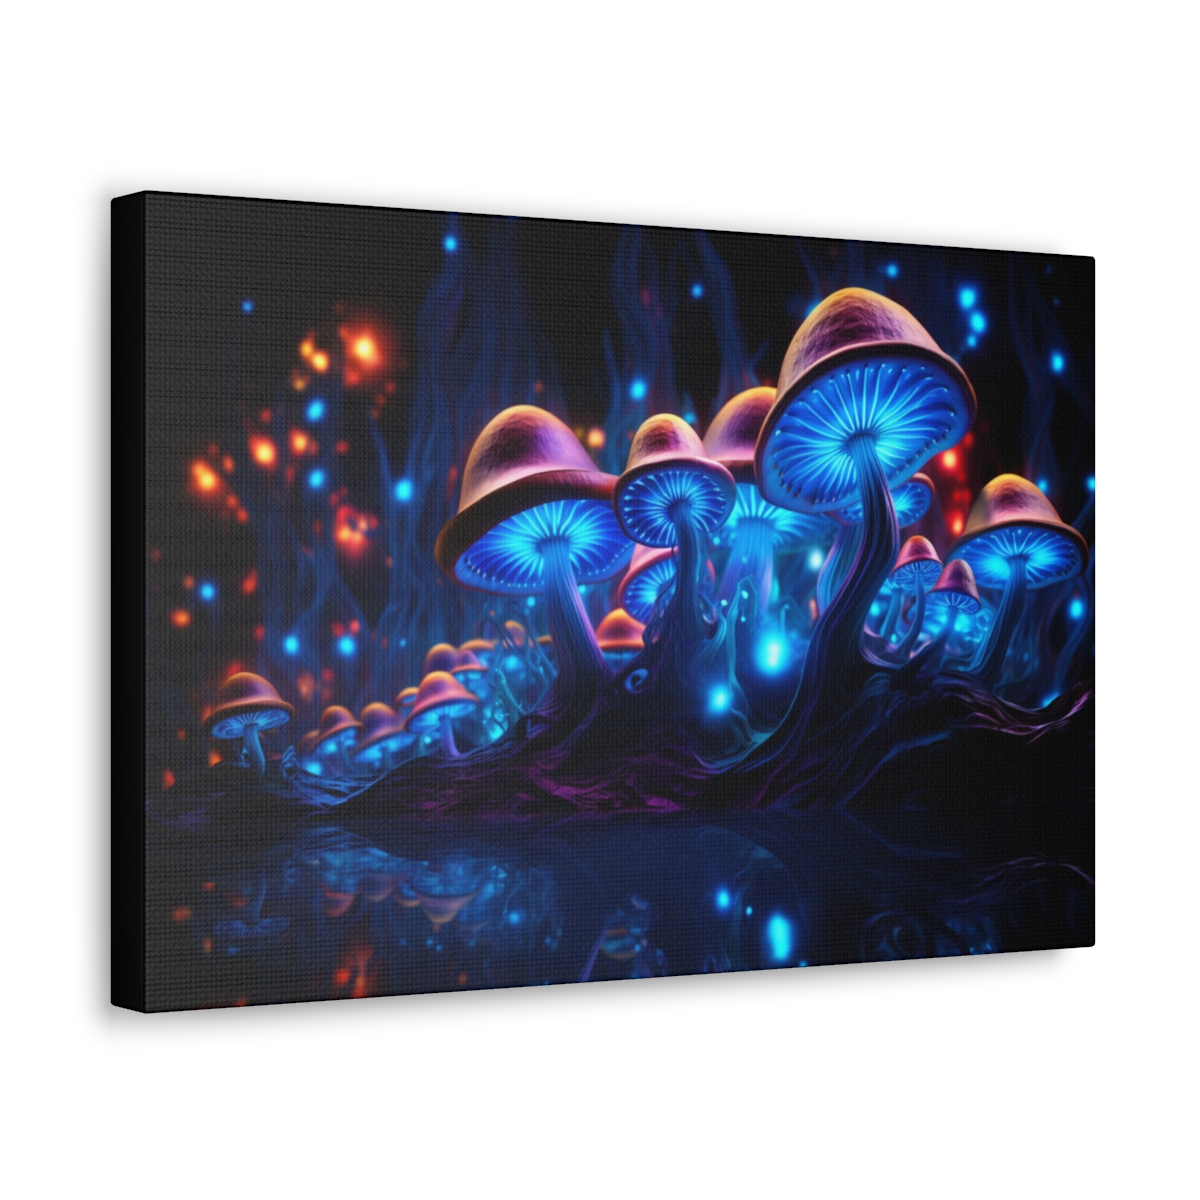 Trippy Mushroom Art Canvas Print: Bioluminescent